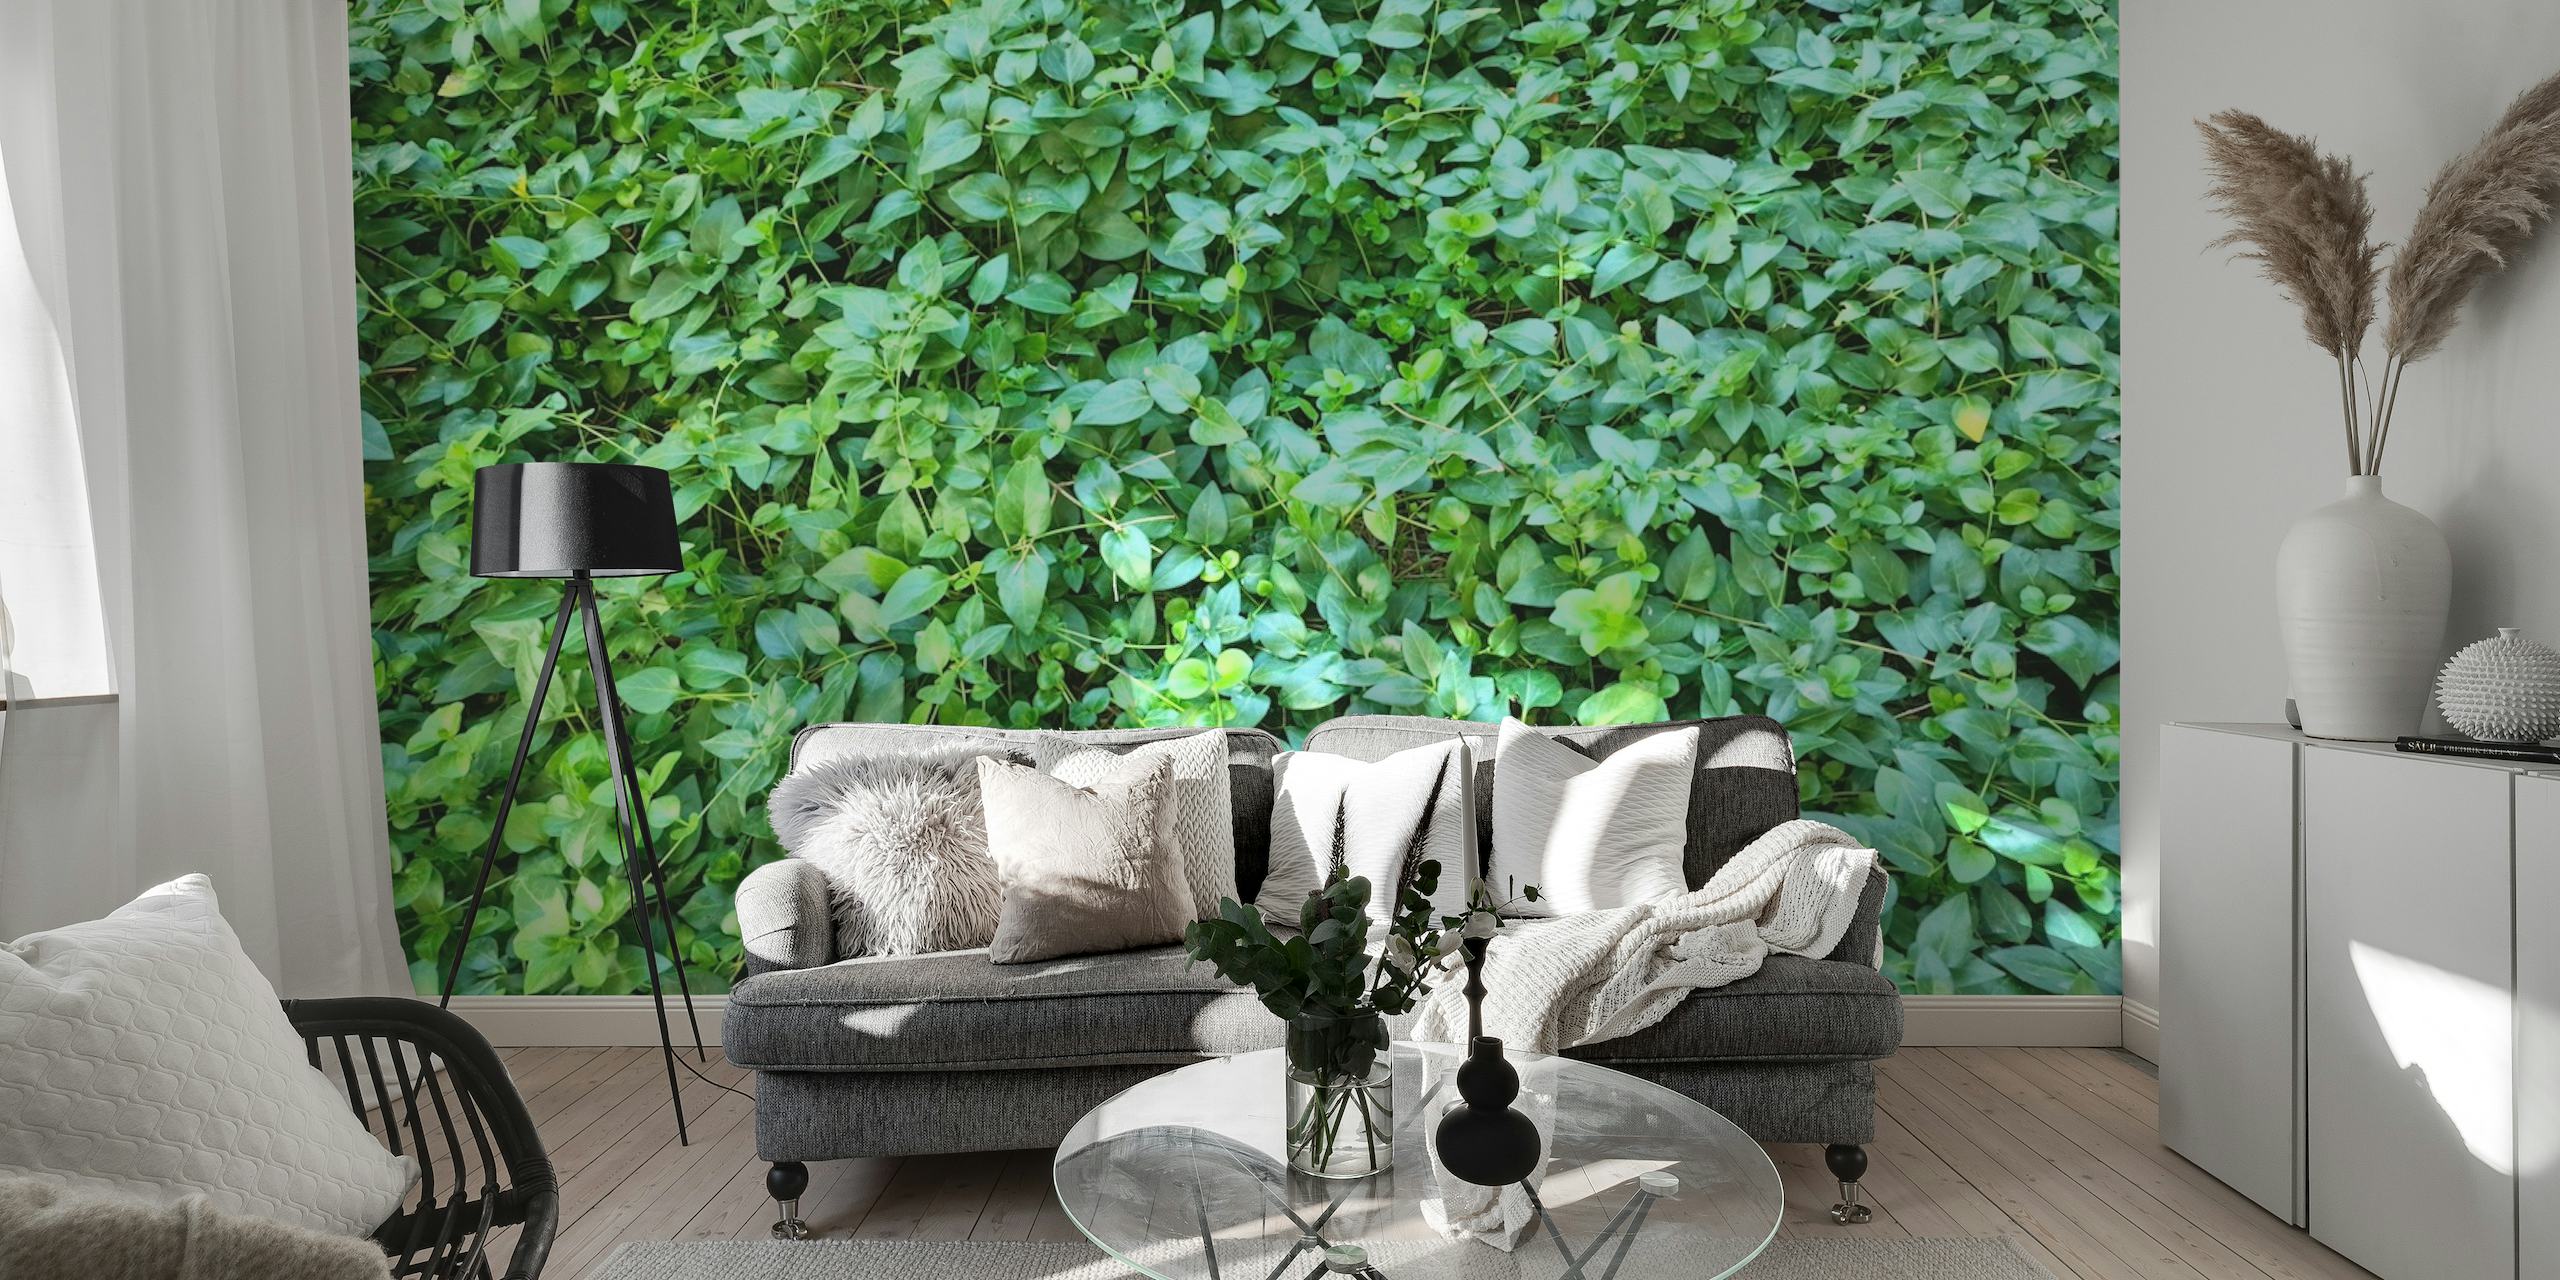 Fotomural vinílico de parede com vegetação exuberante e folhagem densa para uma decoração interior relaxante